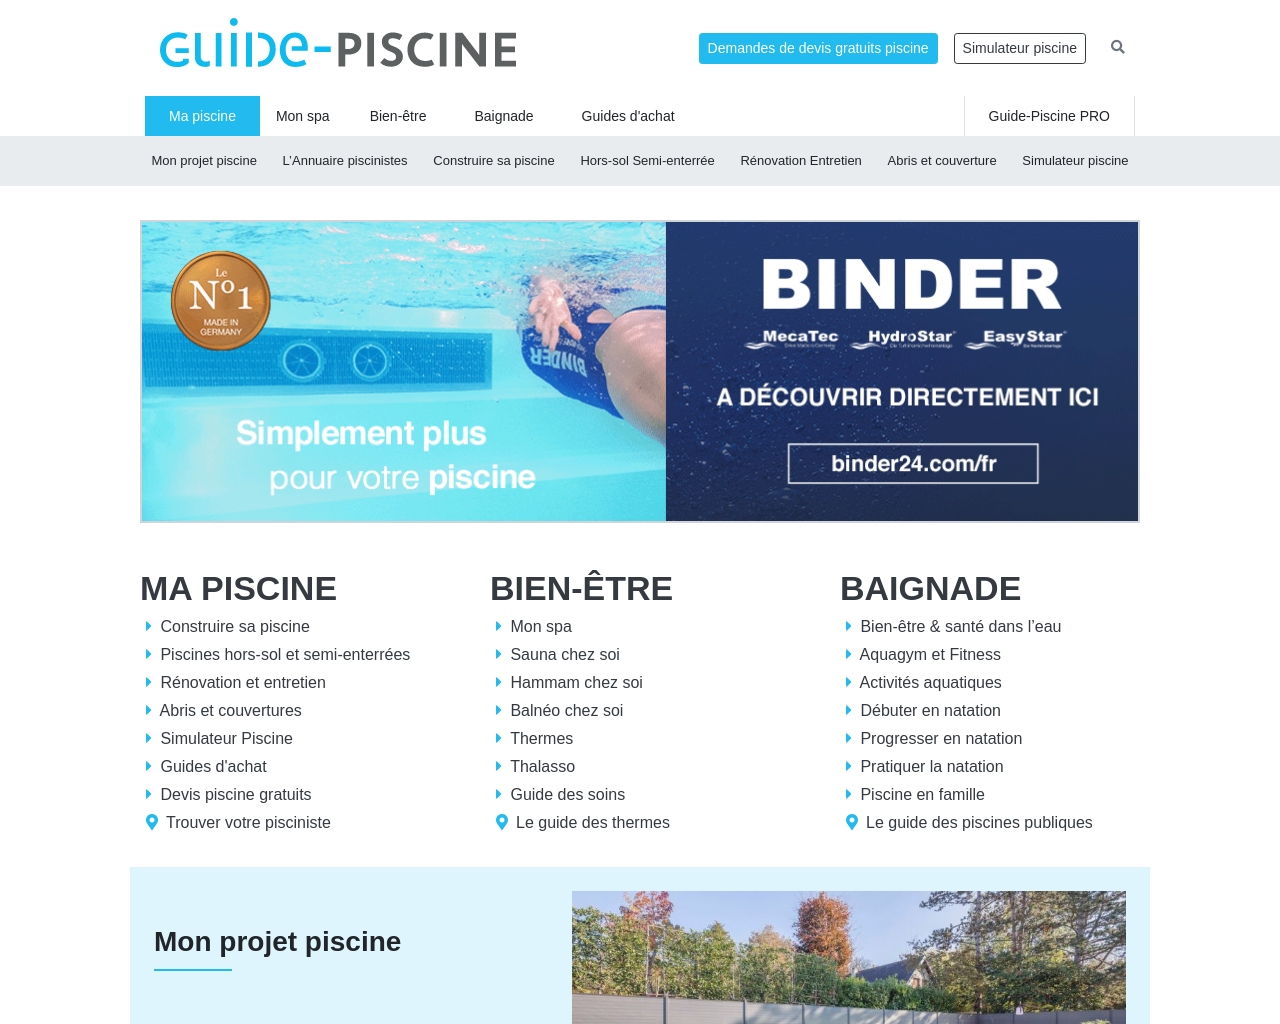 www.guide-piscine.fr